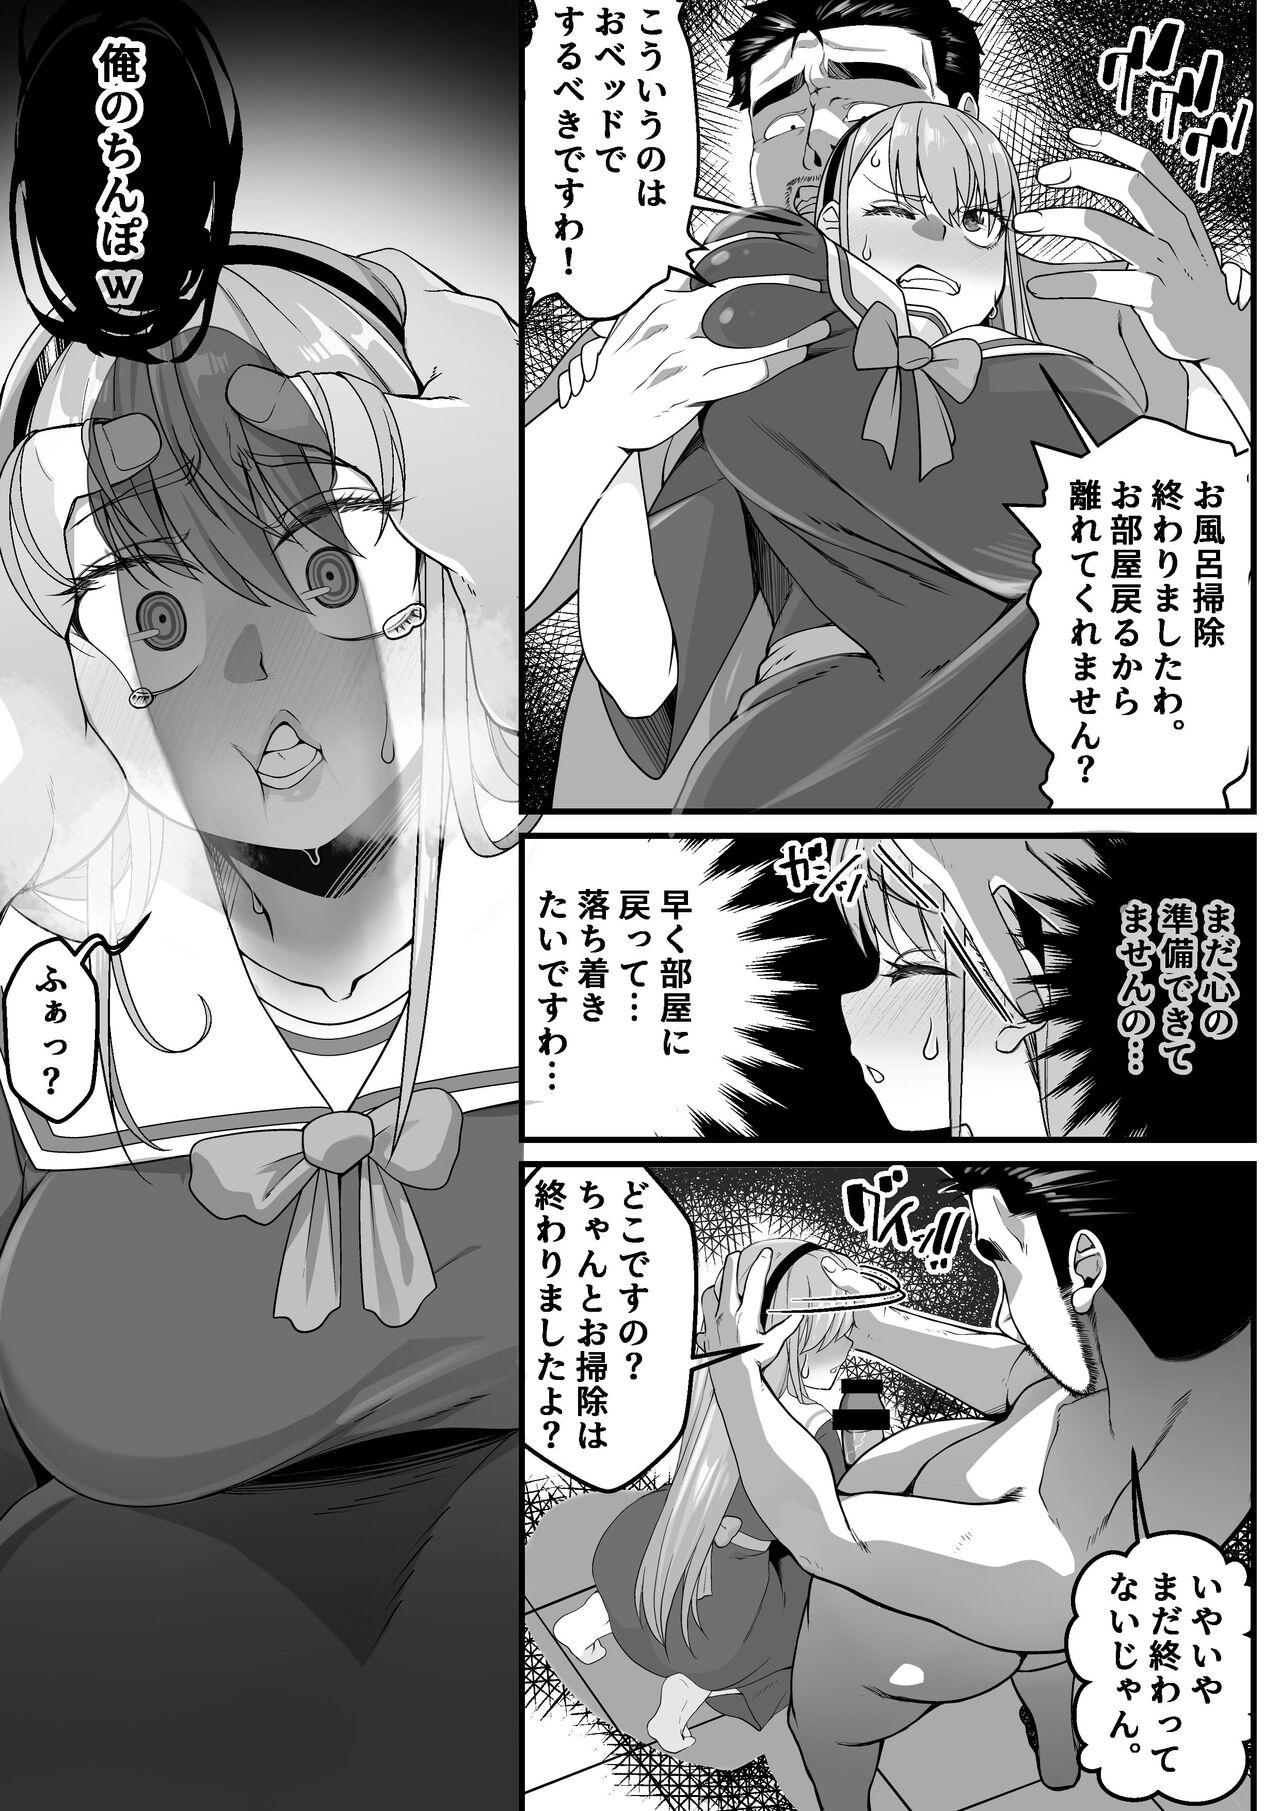 Nylon Takarakuji 12 Oku Tousen! ~ Ero ni Zen Toushi shite, Harem Goten Kensetsu!! 2 - Original Students - Page 9